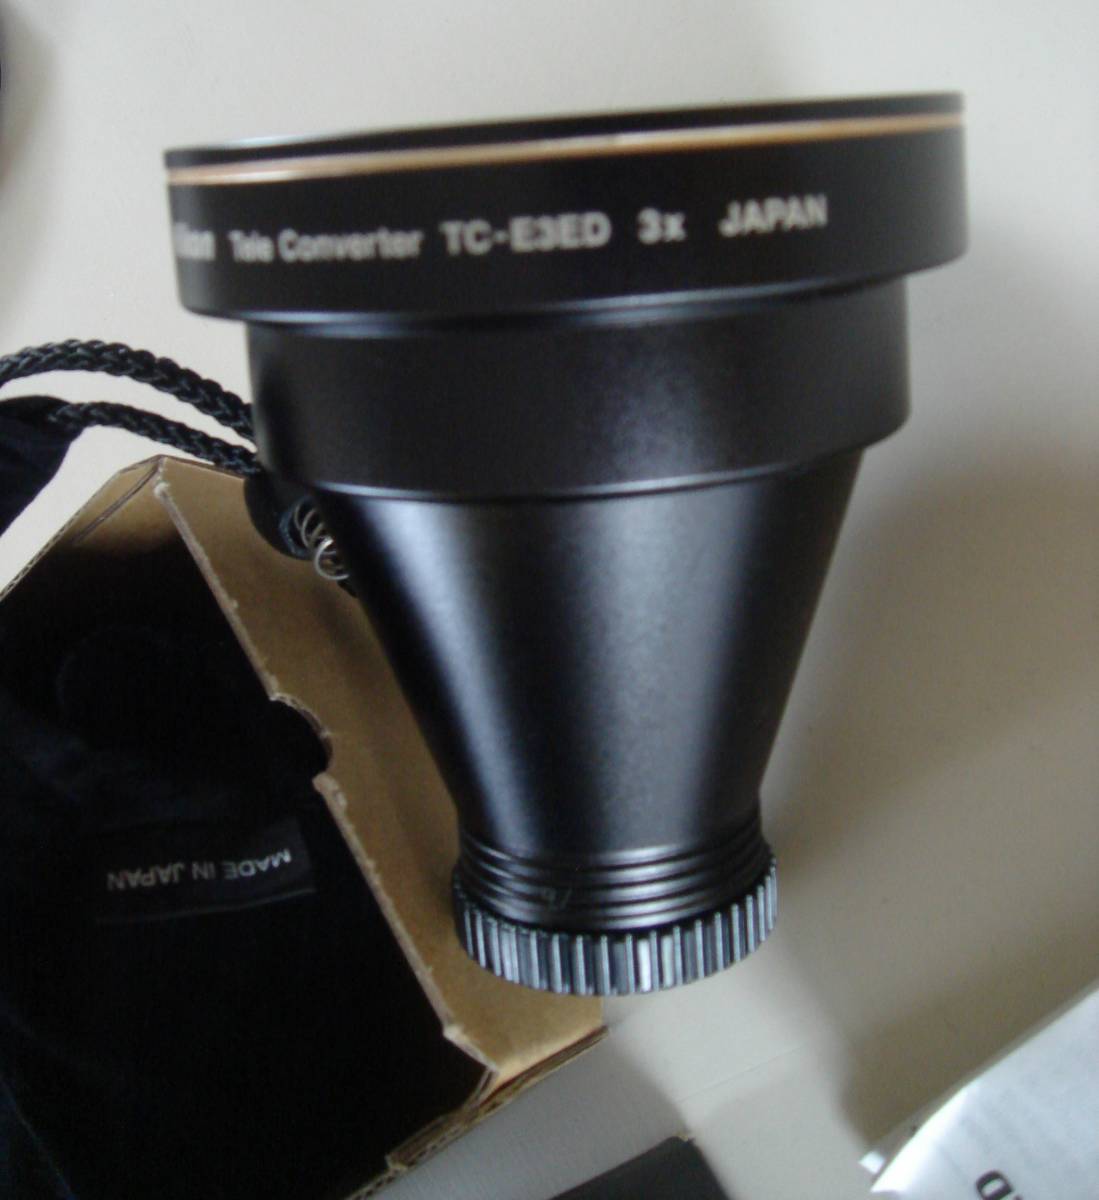  не использовался Nikon TC-E3 ED Telephoto Convertertere конвертер конверсионный объектив замена линзы для аксессуары 